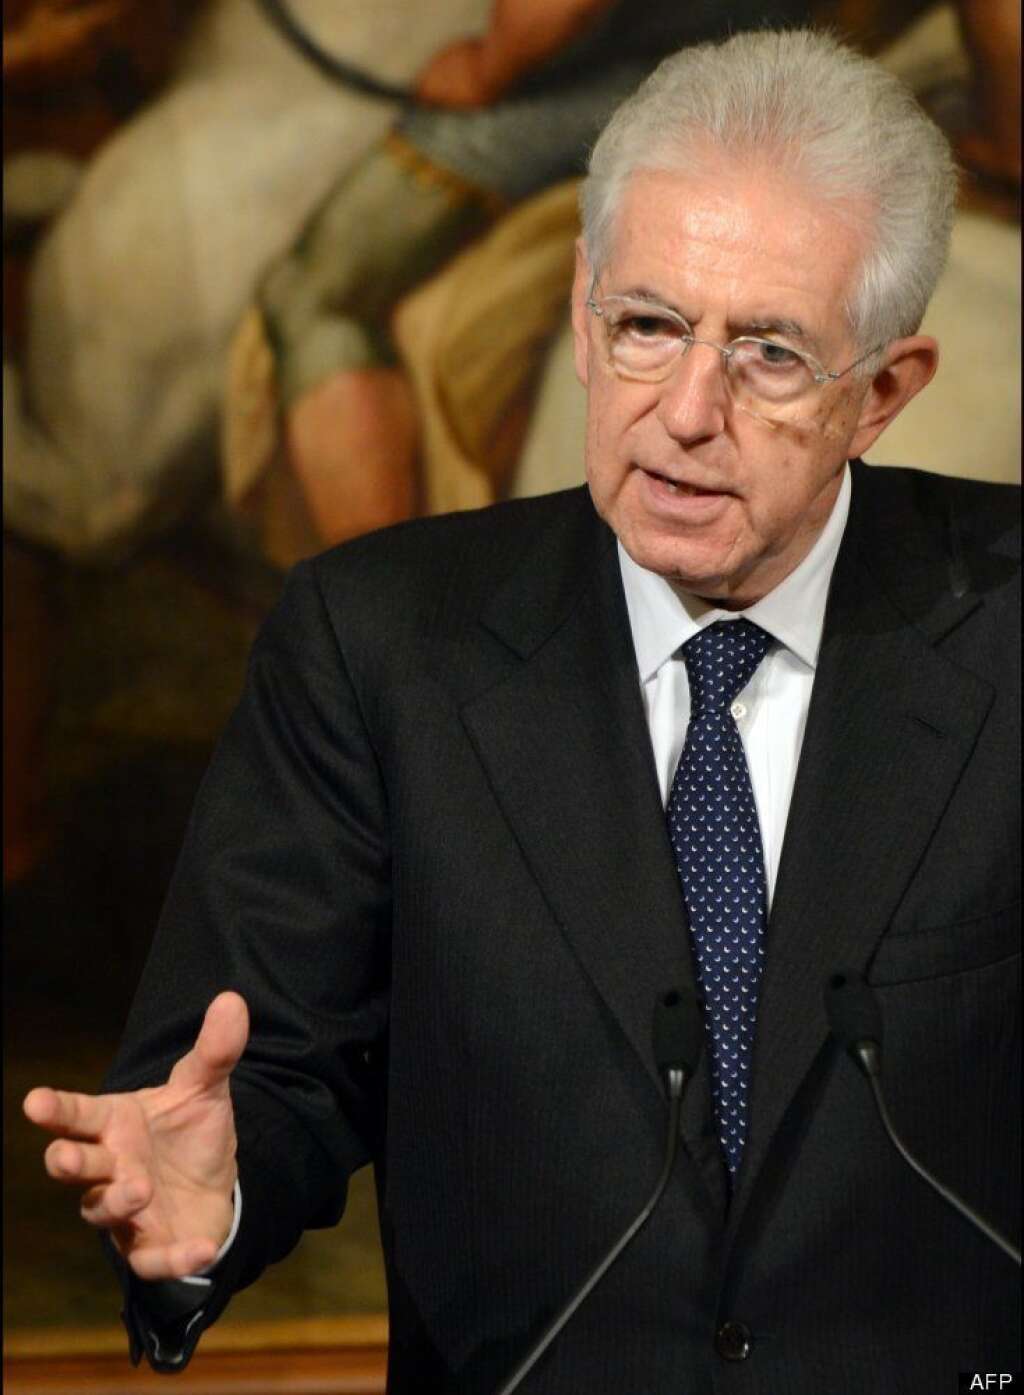 Mario Monti - "Je suis confiant (dans le fait) qu'en cas de référendum, les citoyens britanniques décideront de rester dans l'Union européenne et contribueront à bâtir son avenir", a déclaré le président du Conseil italien devant un parterre d'hommes d'affaires et de responsables politiques, réunis dans le cadre du Forum économique mondial (WEF).    Mario Monti s'est dit d'accord avec son homologue britannique David Cameron sur l'avantage qu'il y a à poser au peuple la "vraie question, pas des questions marginales" sur la façon dont la Grande-Bretagne pourrait rester en dehors de certaines politiques communes.